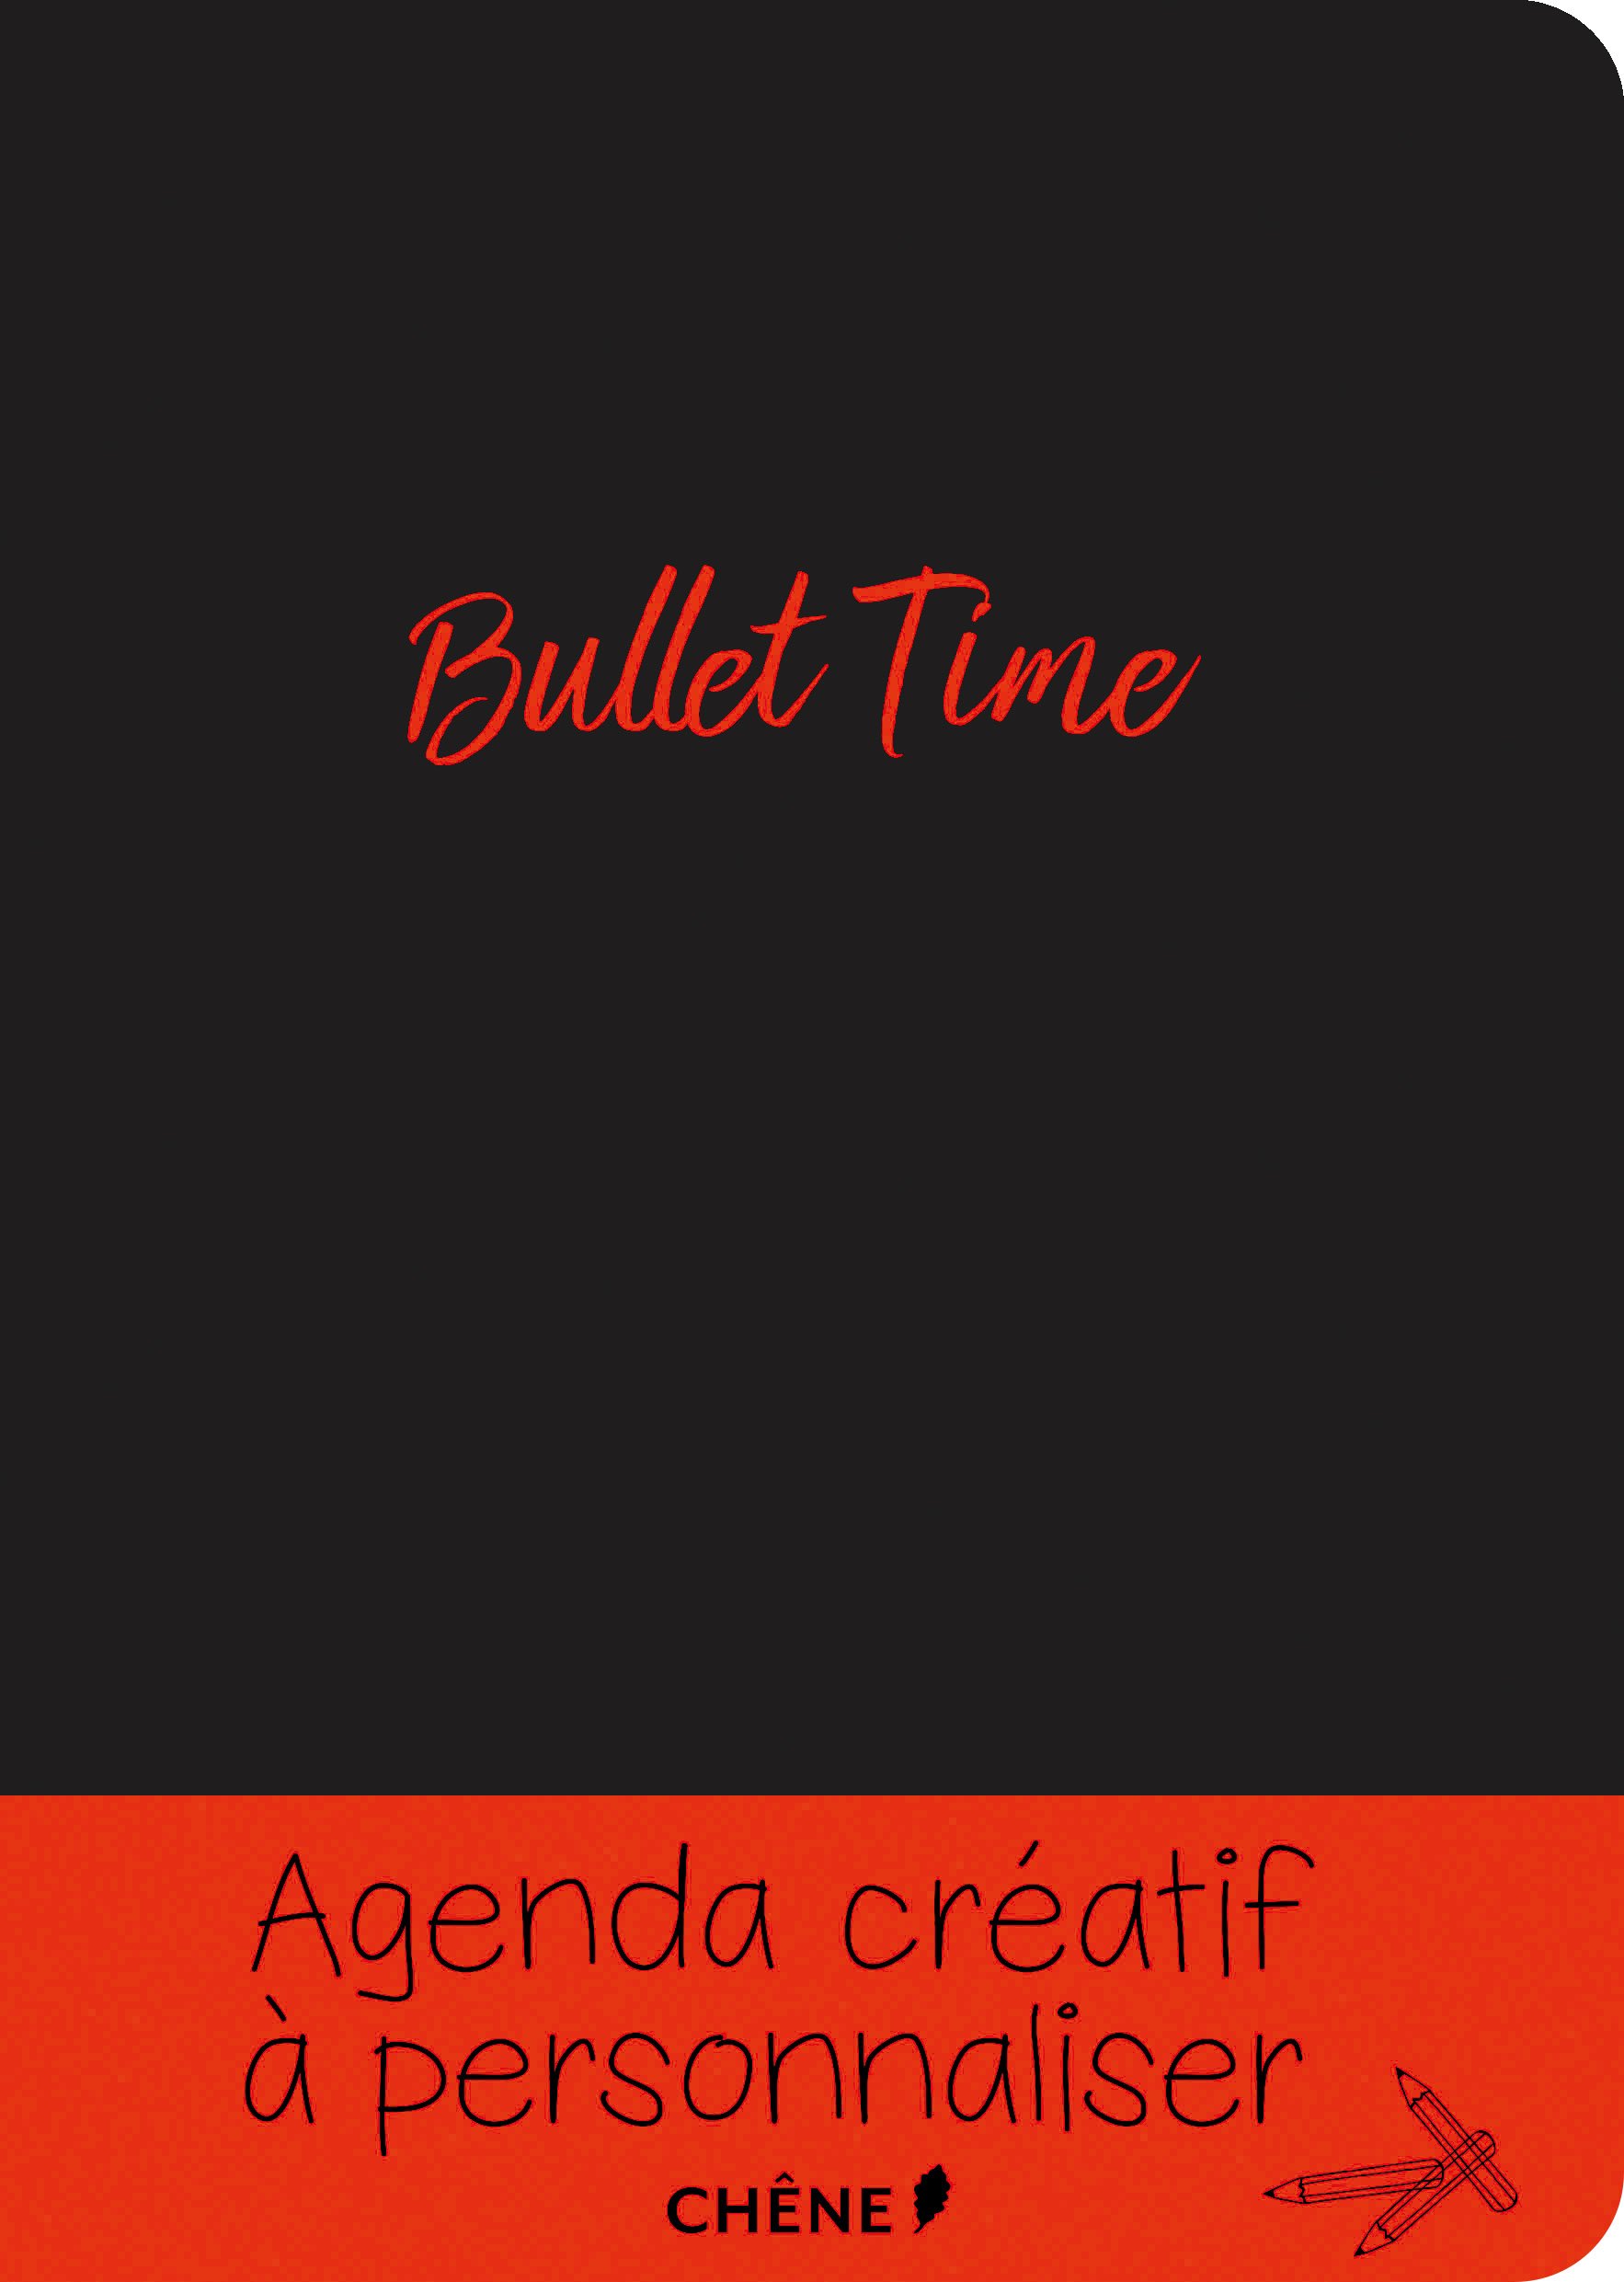 bullet-journal-time